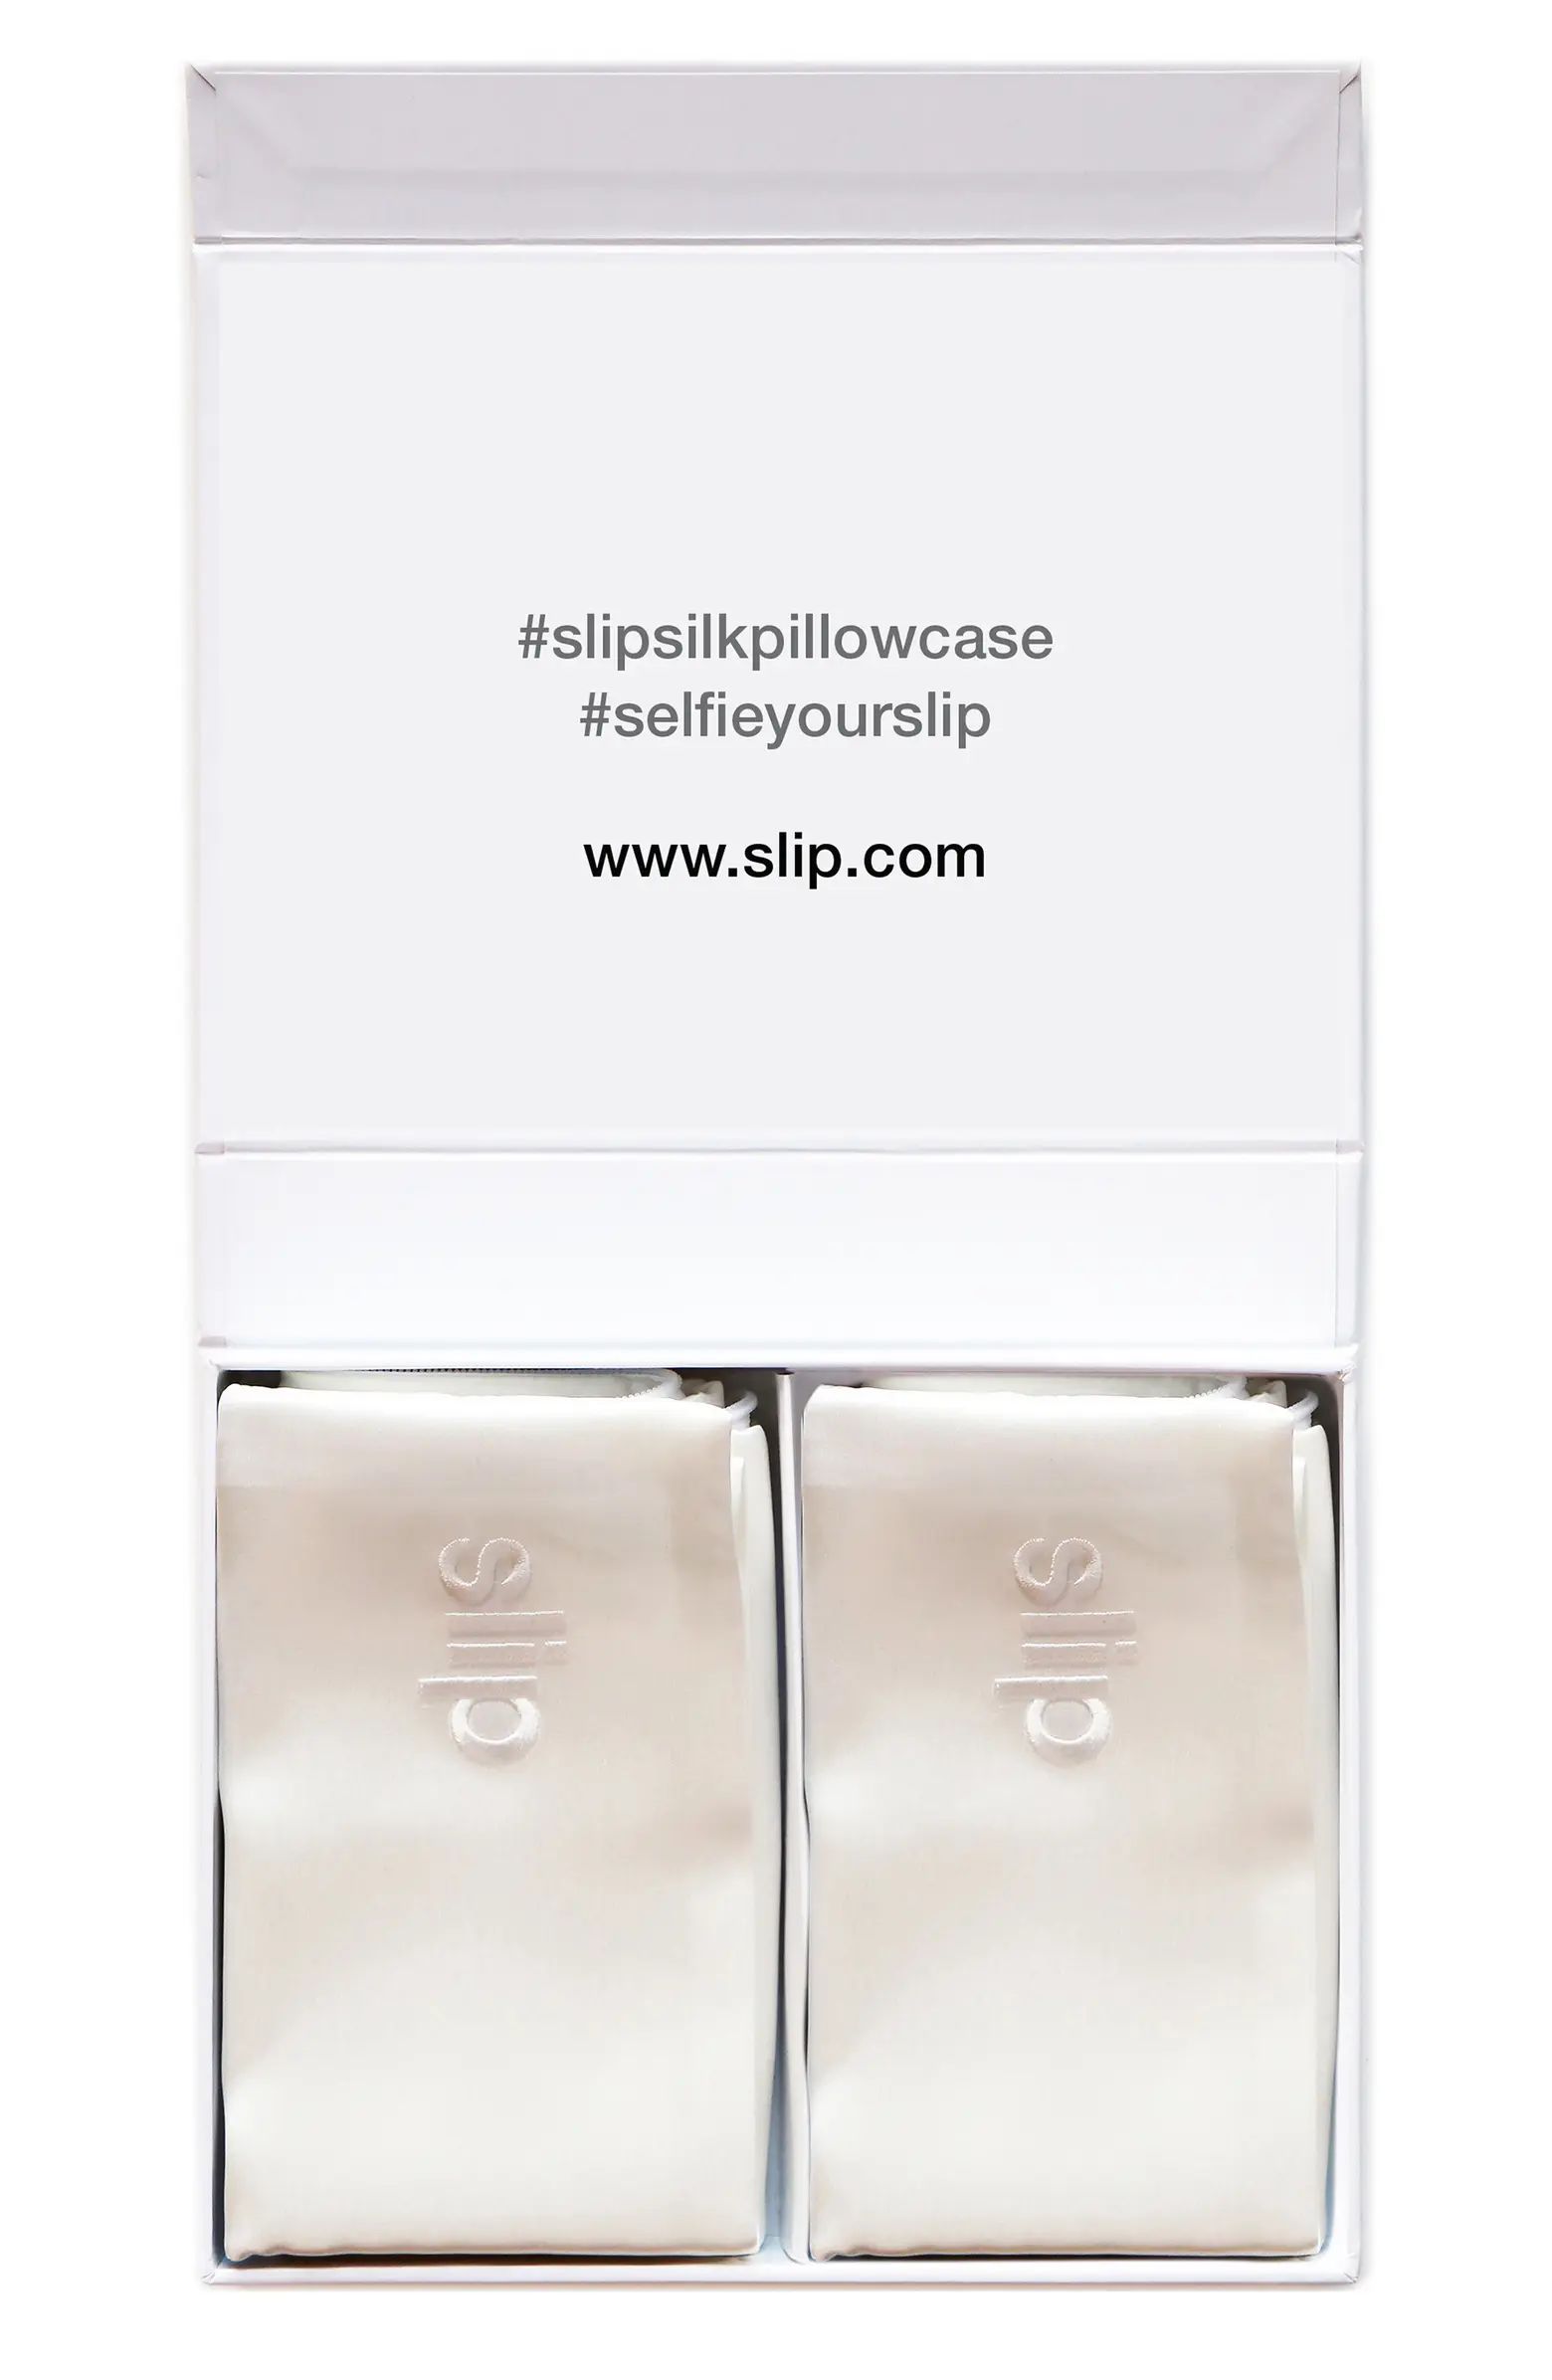 Silk Queen Pillowcase Duo $178 Value | Nordstrom